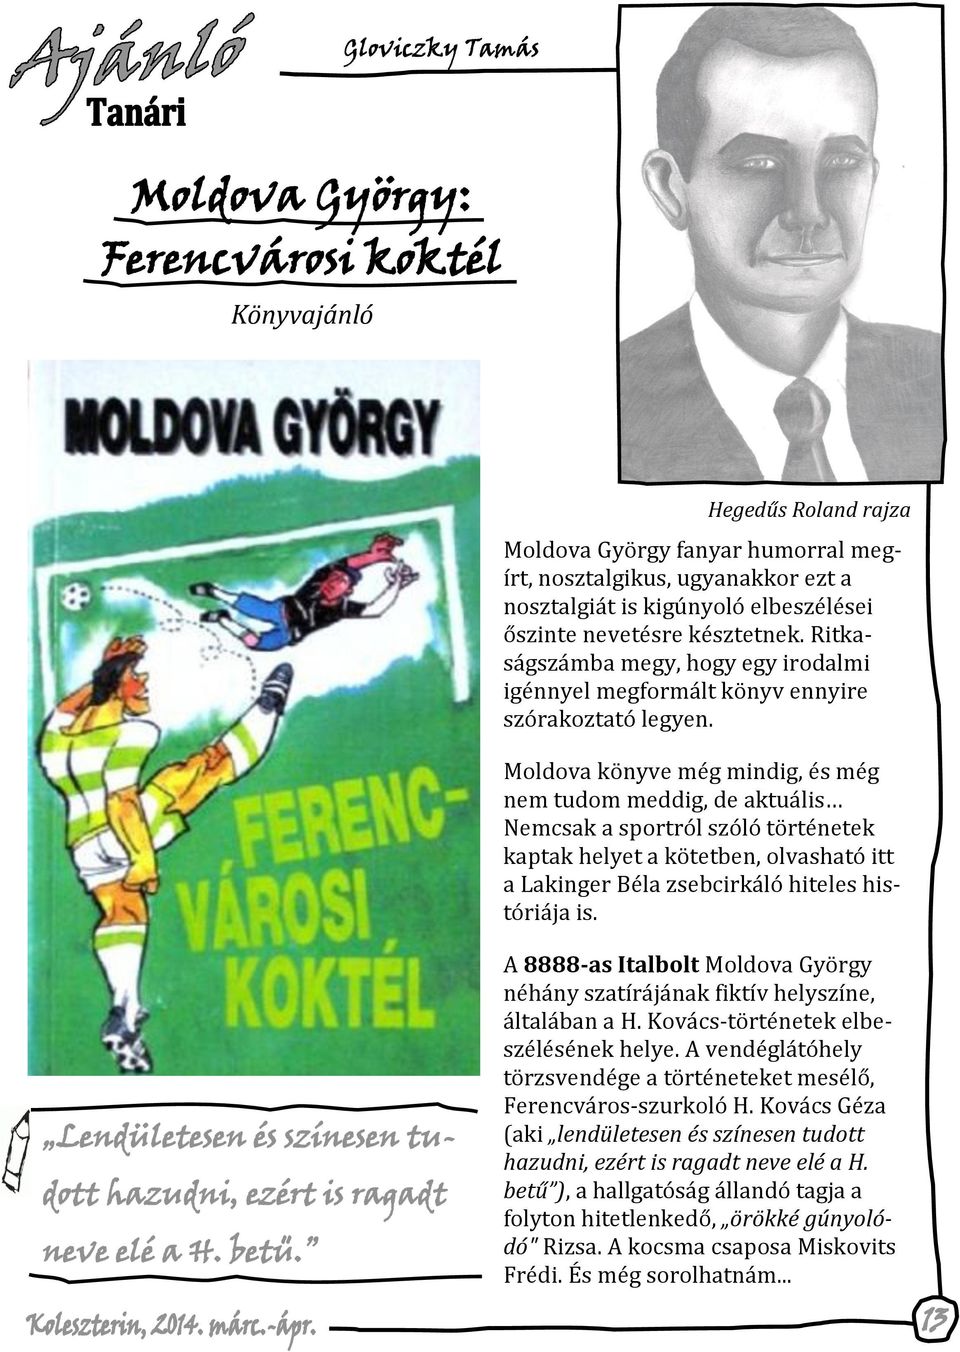 Moldova könyve még mindig, és még nem tudom meddig, de aktuális Nemcsak a sportról szóló történetek kaptak helyet a kötetben, olvasható itt a Lakinger Béla zsebcirkáló hiteles históriája is.